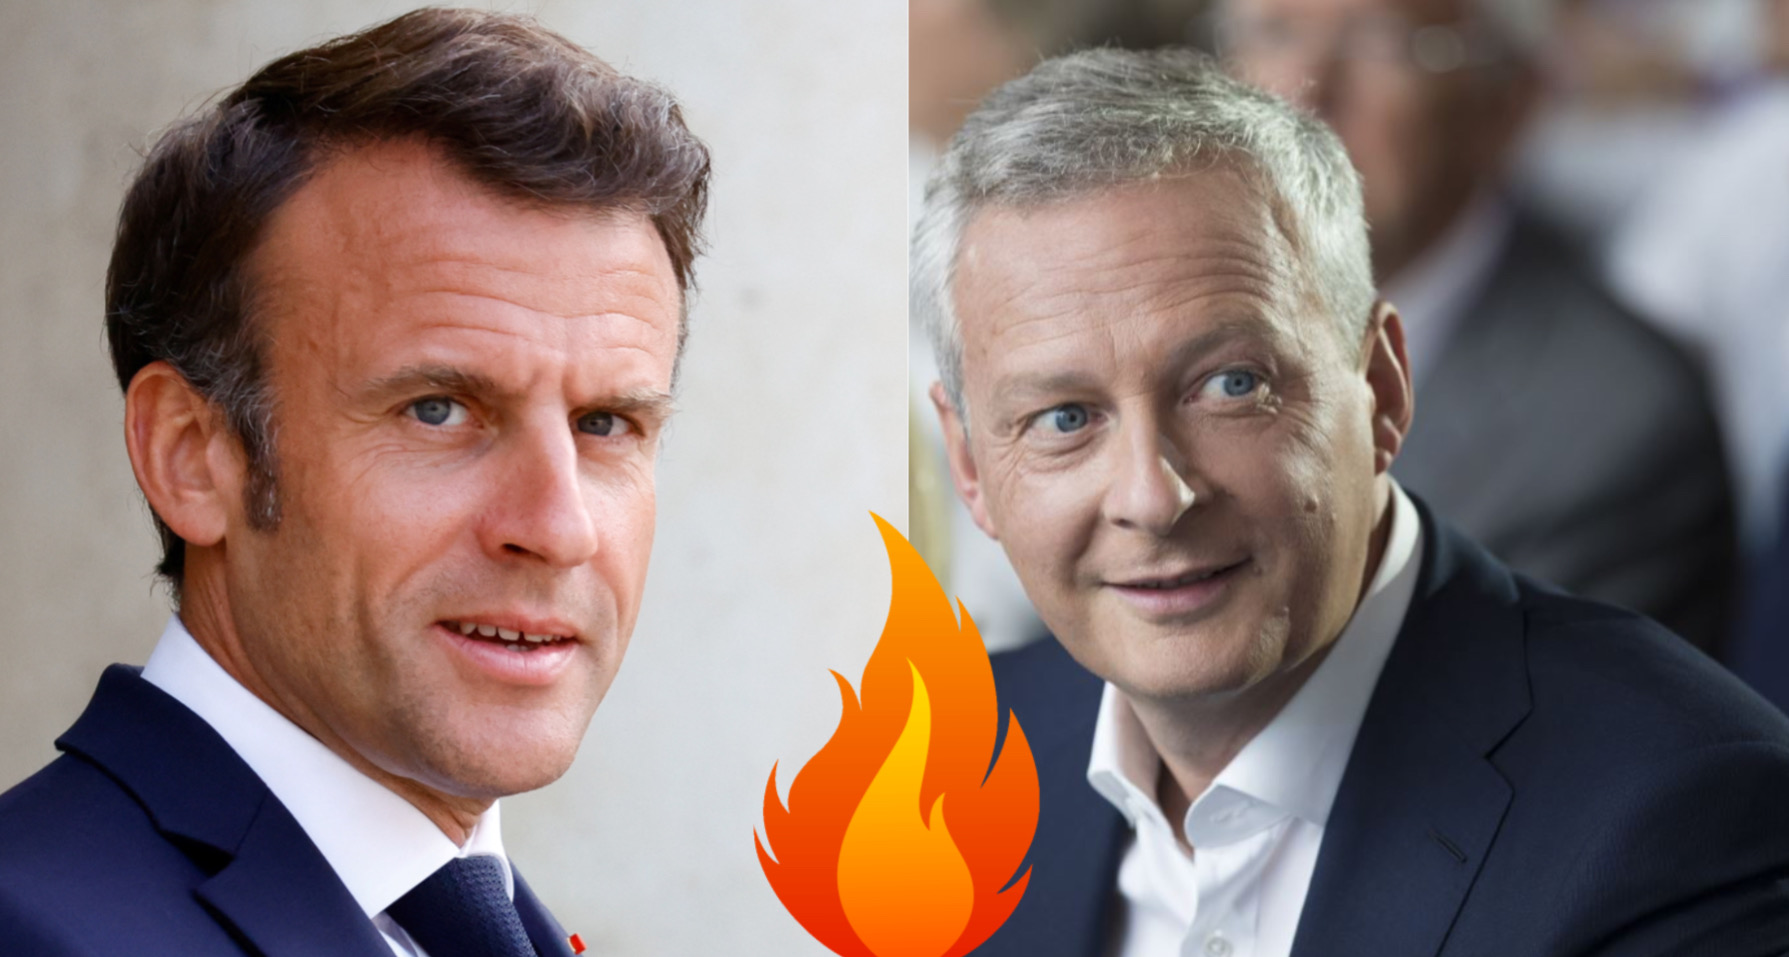 Érosion en Macronie : Mais que se passe-t-il entre Emmanuel Macron et Bruno le Maire ?